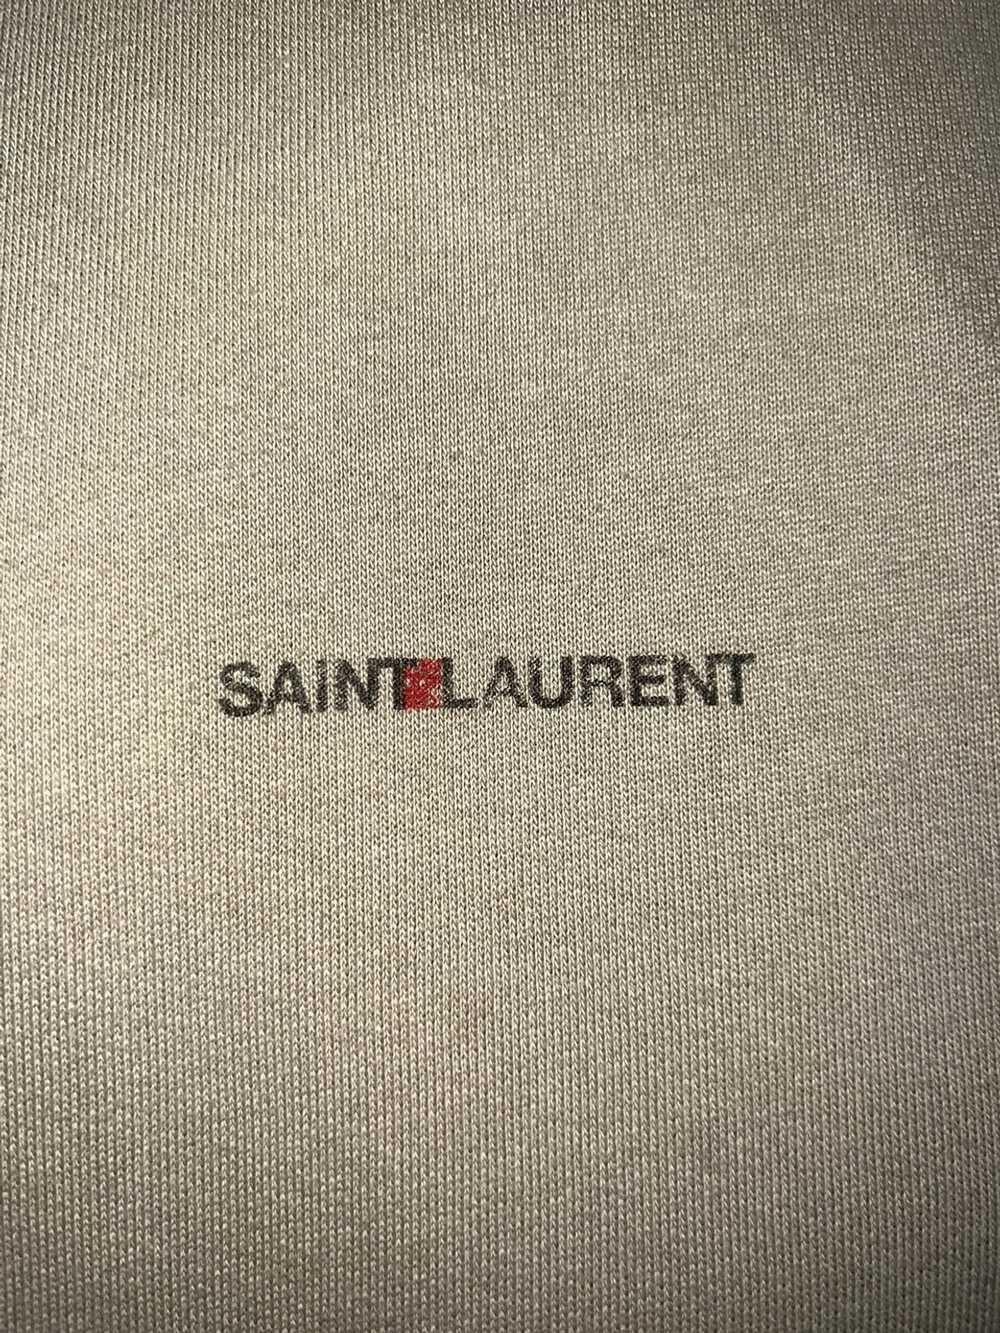 Yves Saint Laurent Brown Saint Laurent Hoodie - image 3